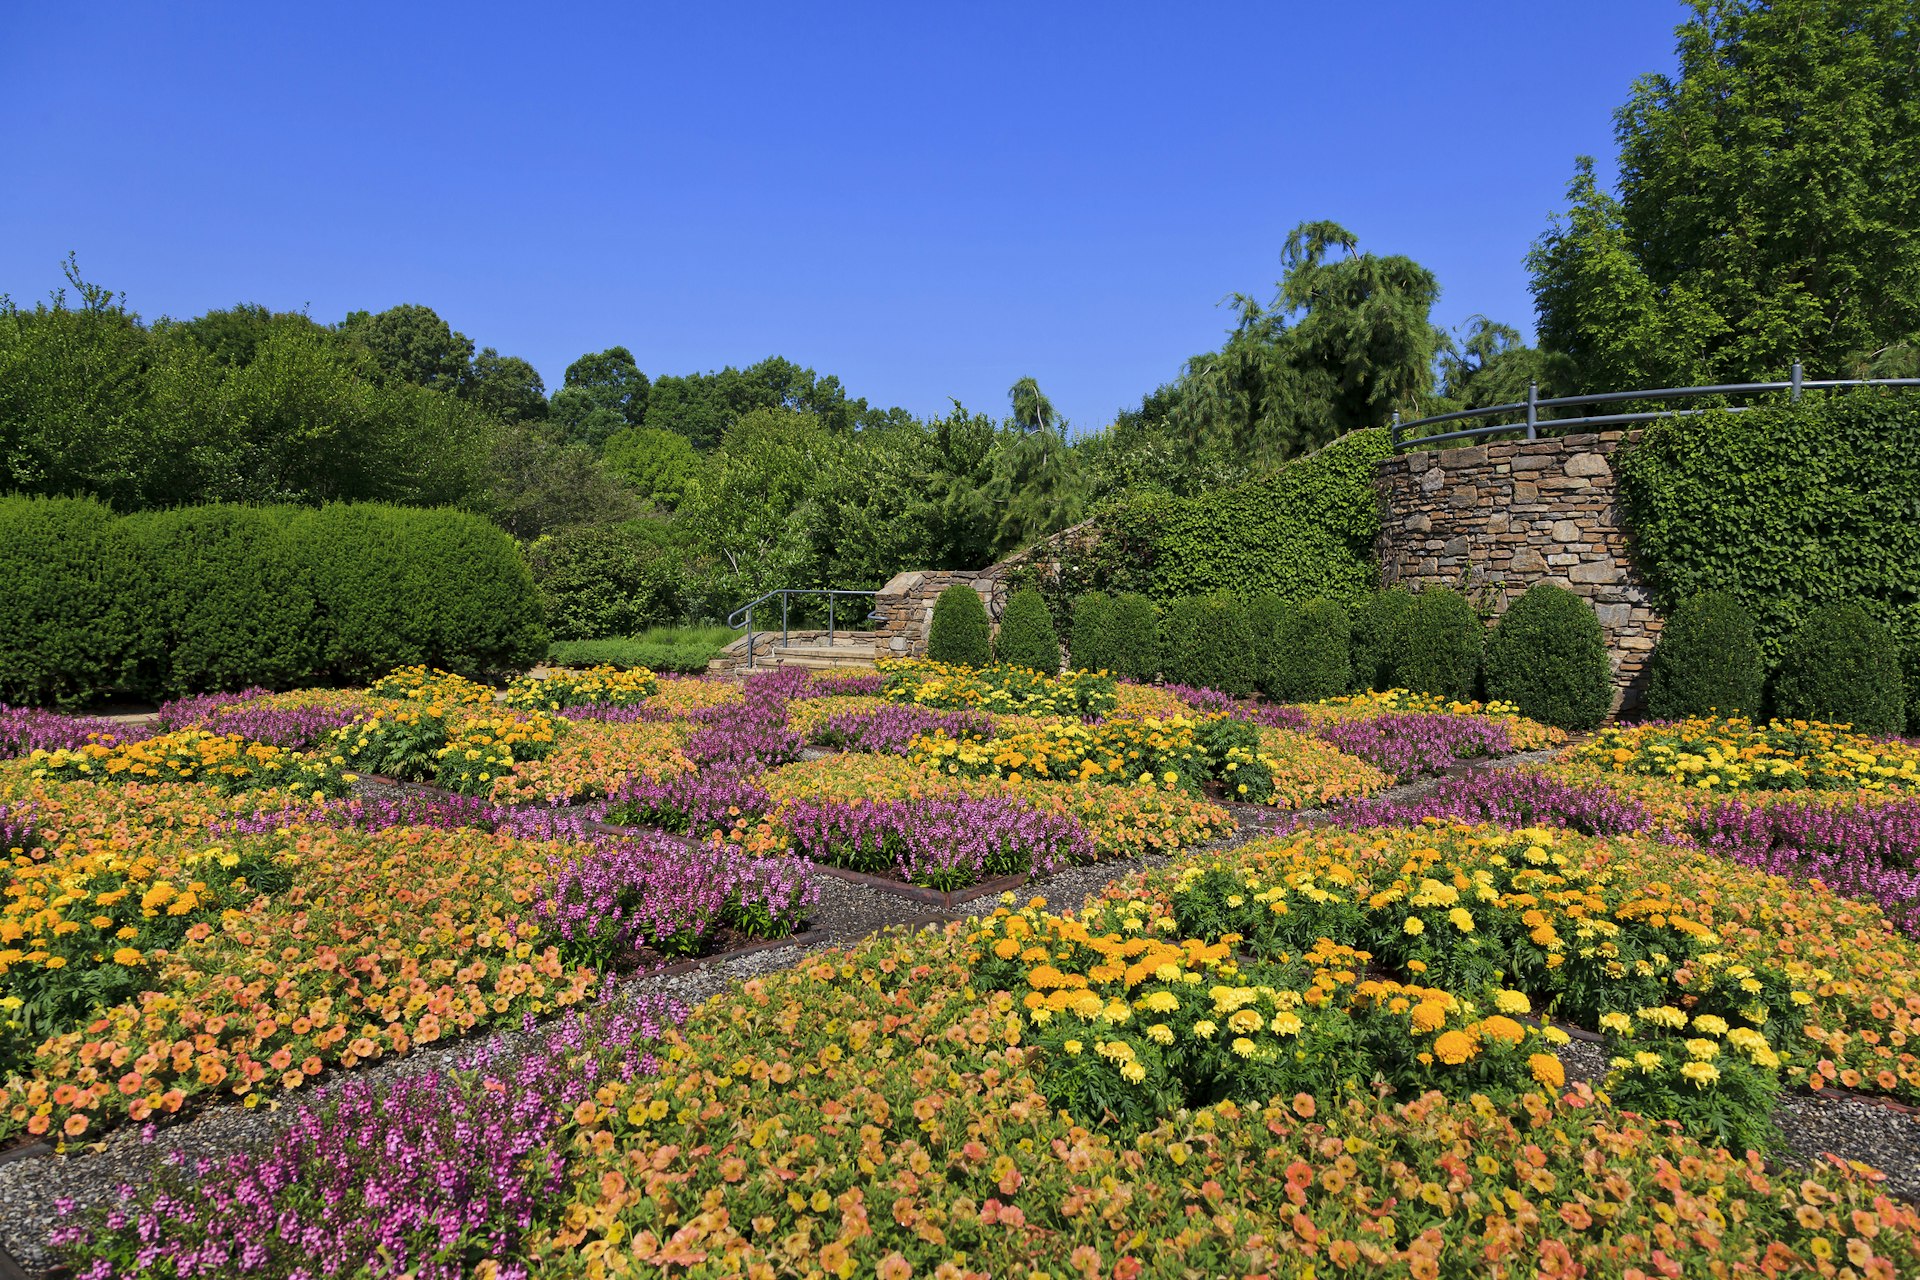 Gardens at the NC Arboretum